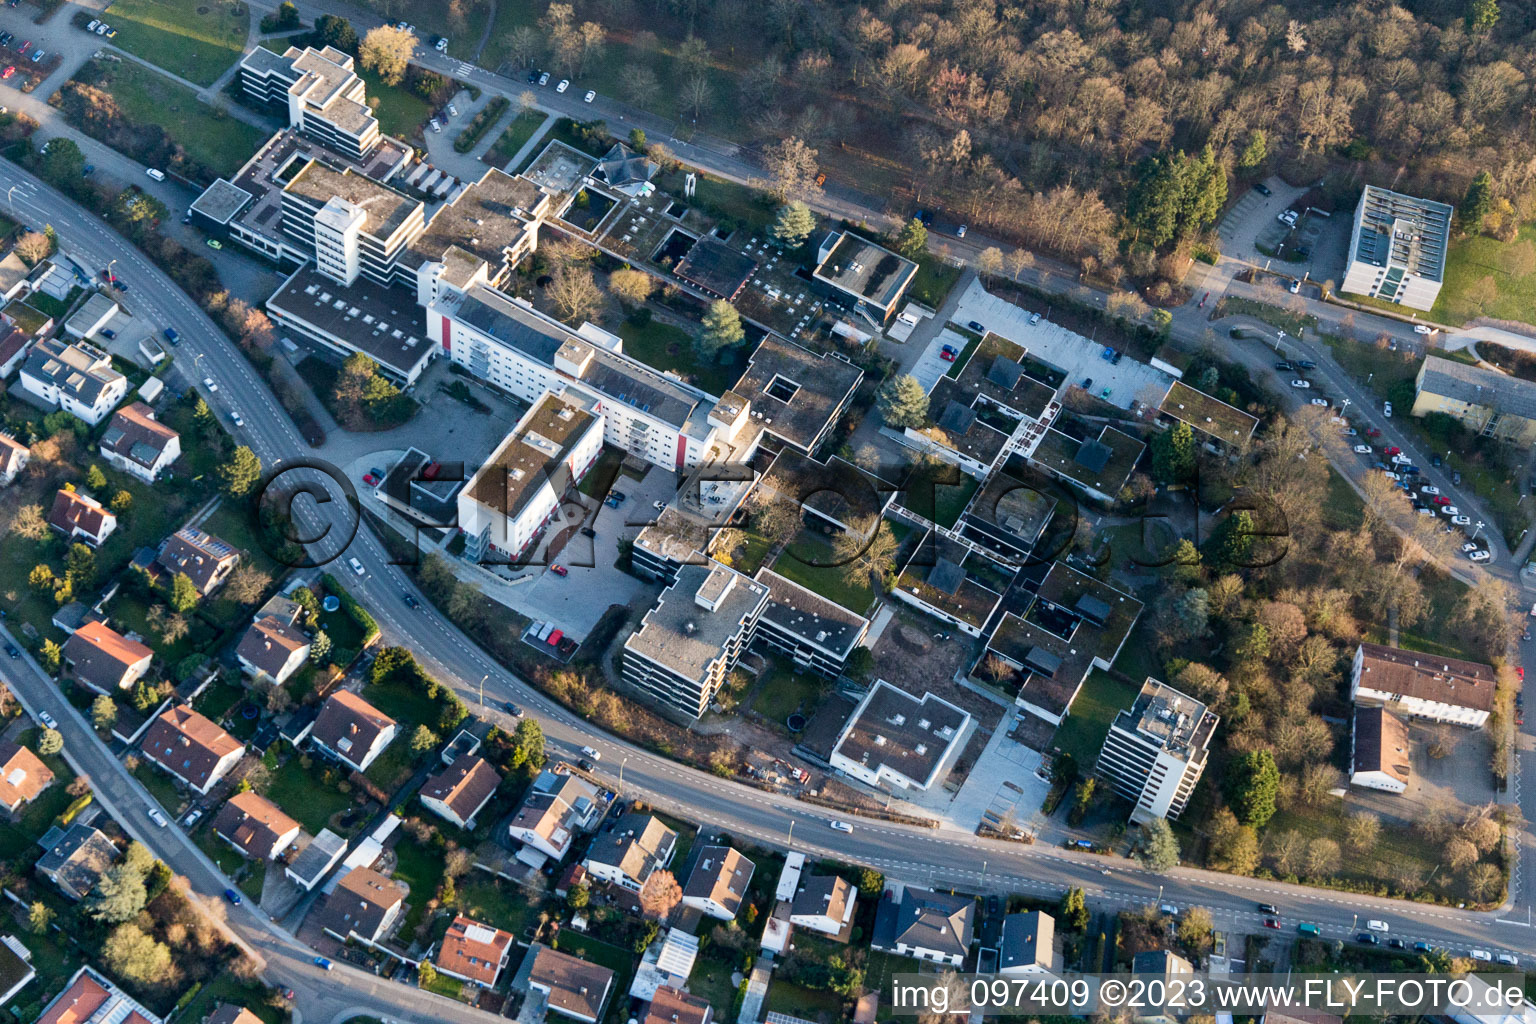 Landau in der Pfalz im Bundesland Rheinland-Pfalz, Deutschland aus der Luft betrachtet